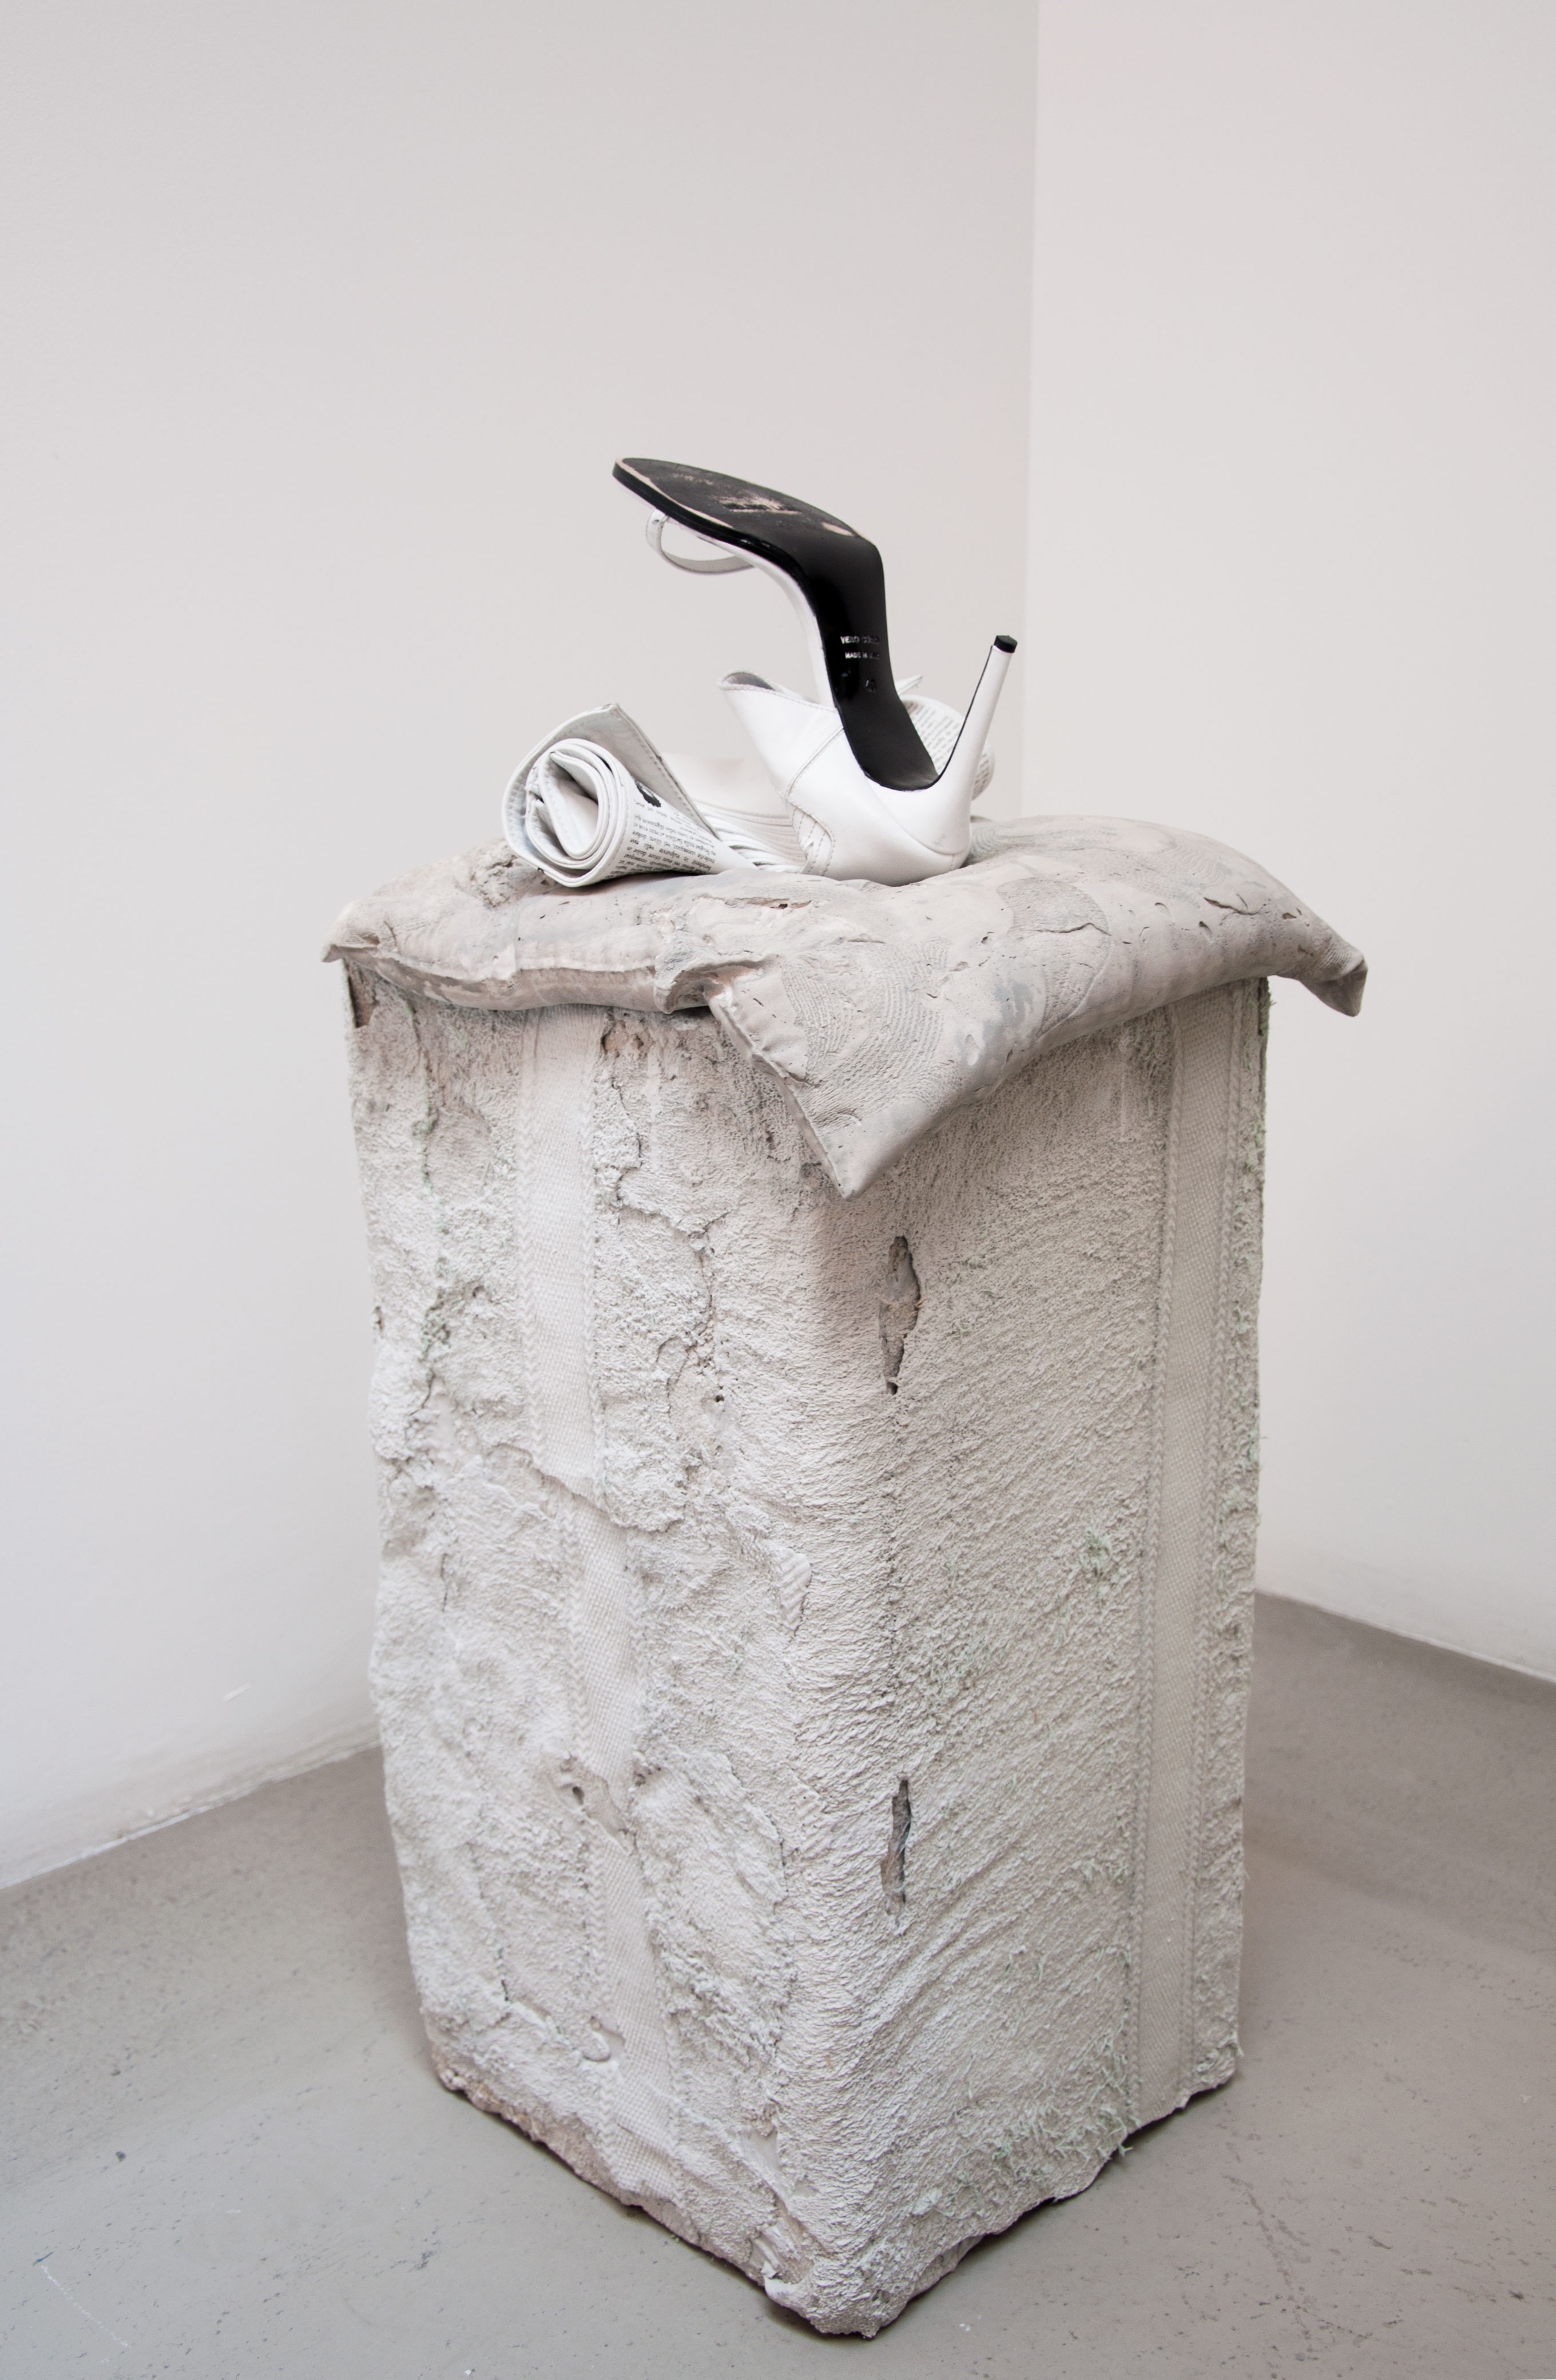 Helmut Lang's Bra Purse is Now a Bra Purse Sculpture - GARAGE